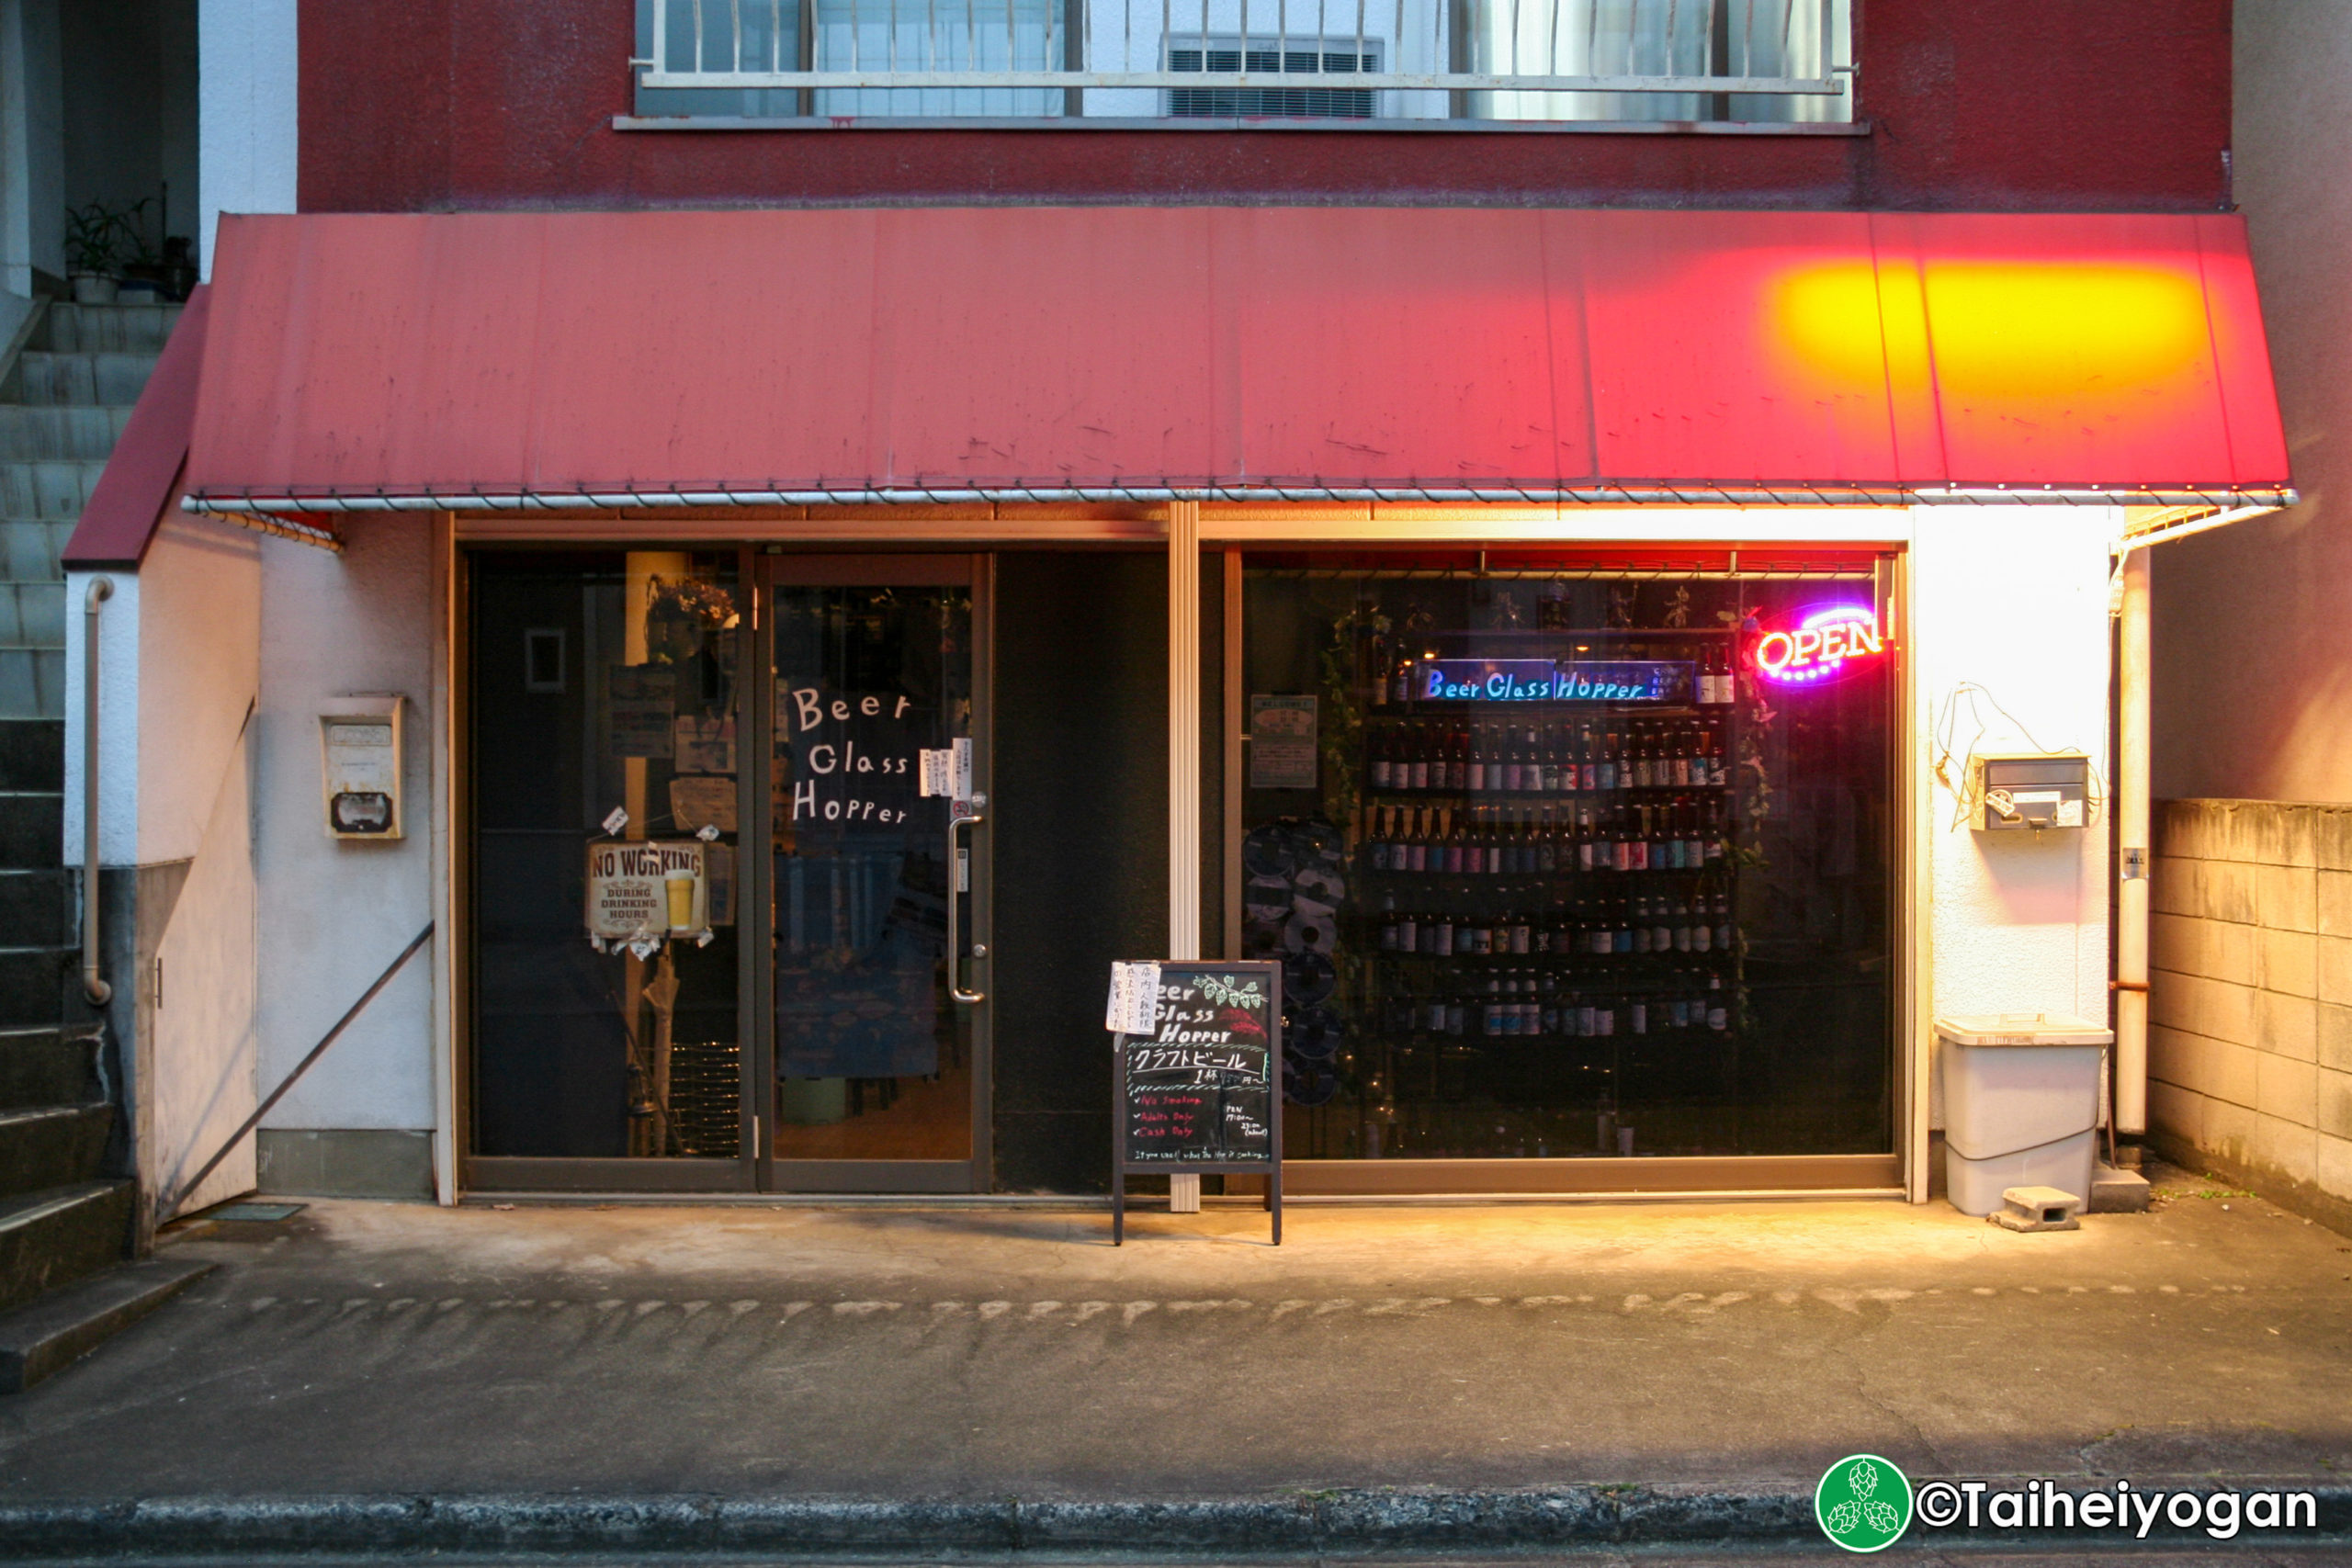 Beer Glass Hopper - Entrance